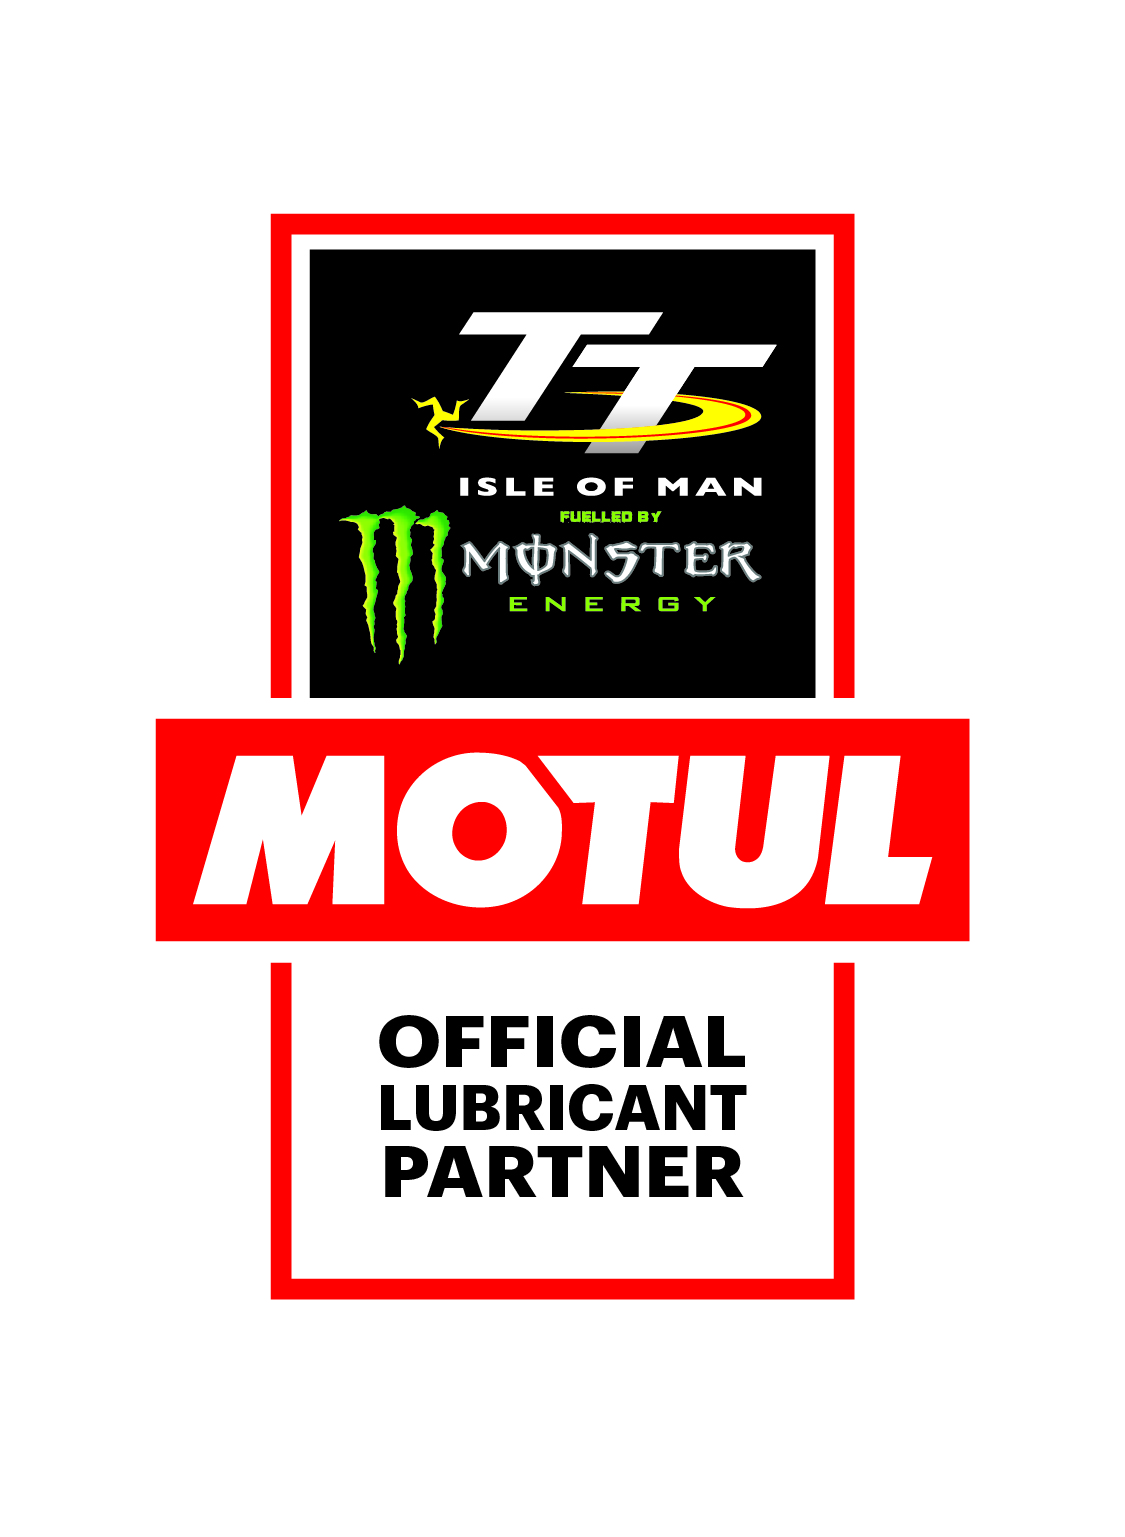 IOM TT cobranded logo